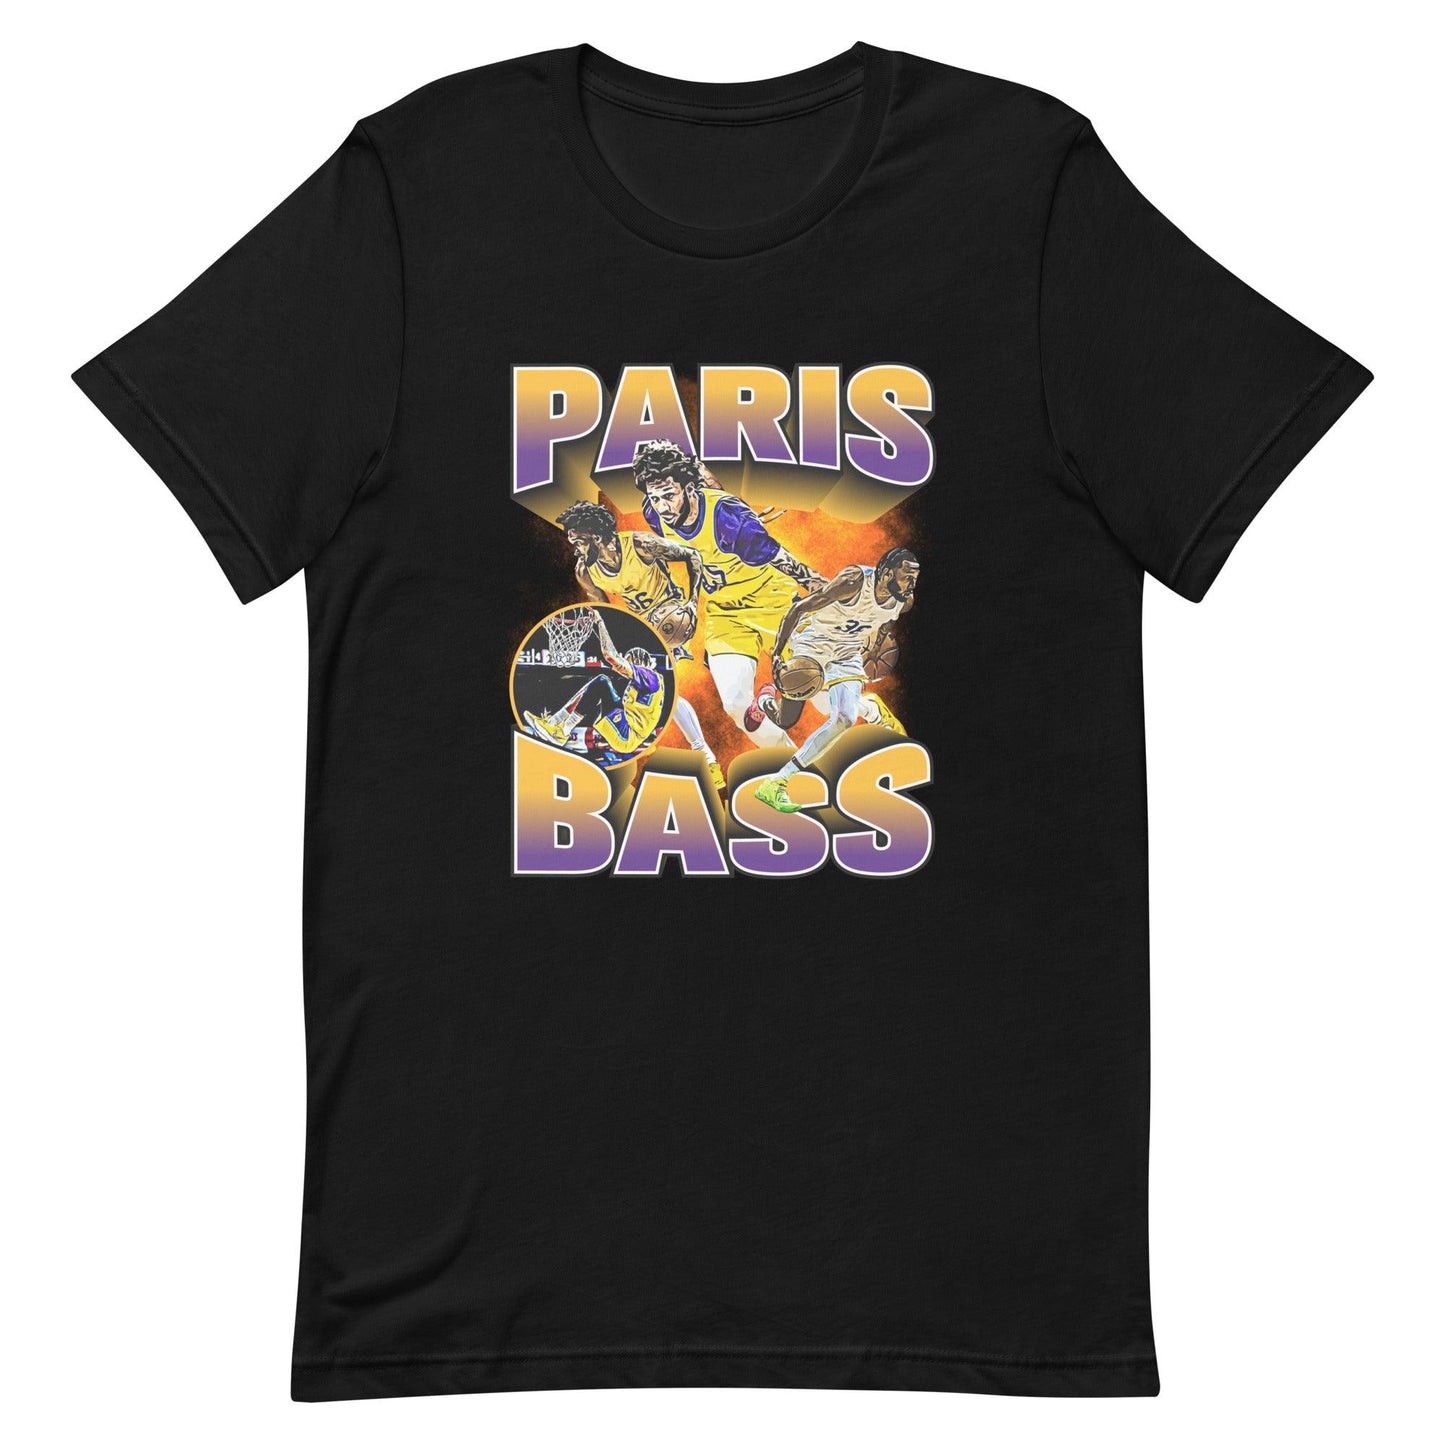 París Bass "Essential" t-shirt - Fan Arch